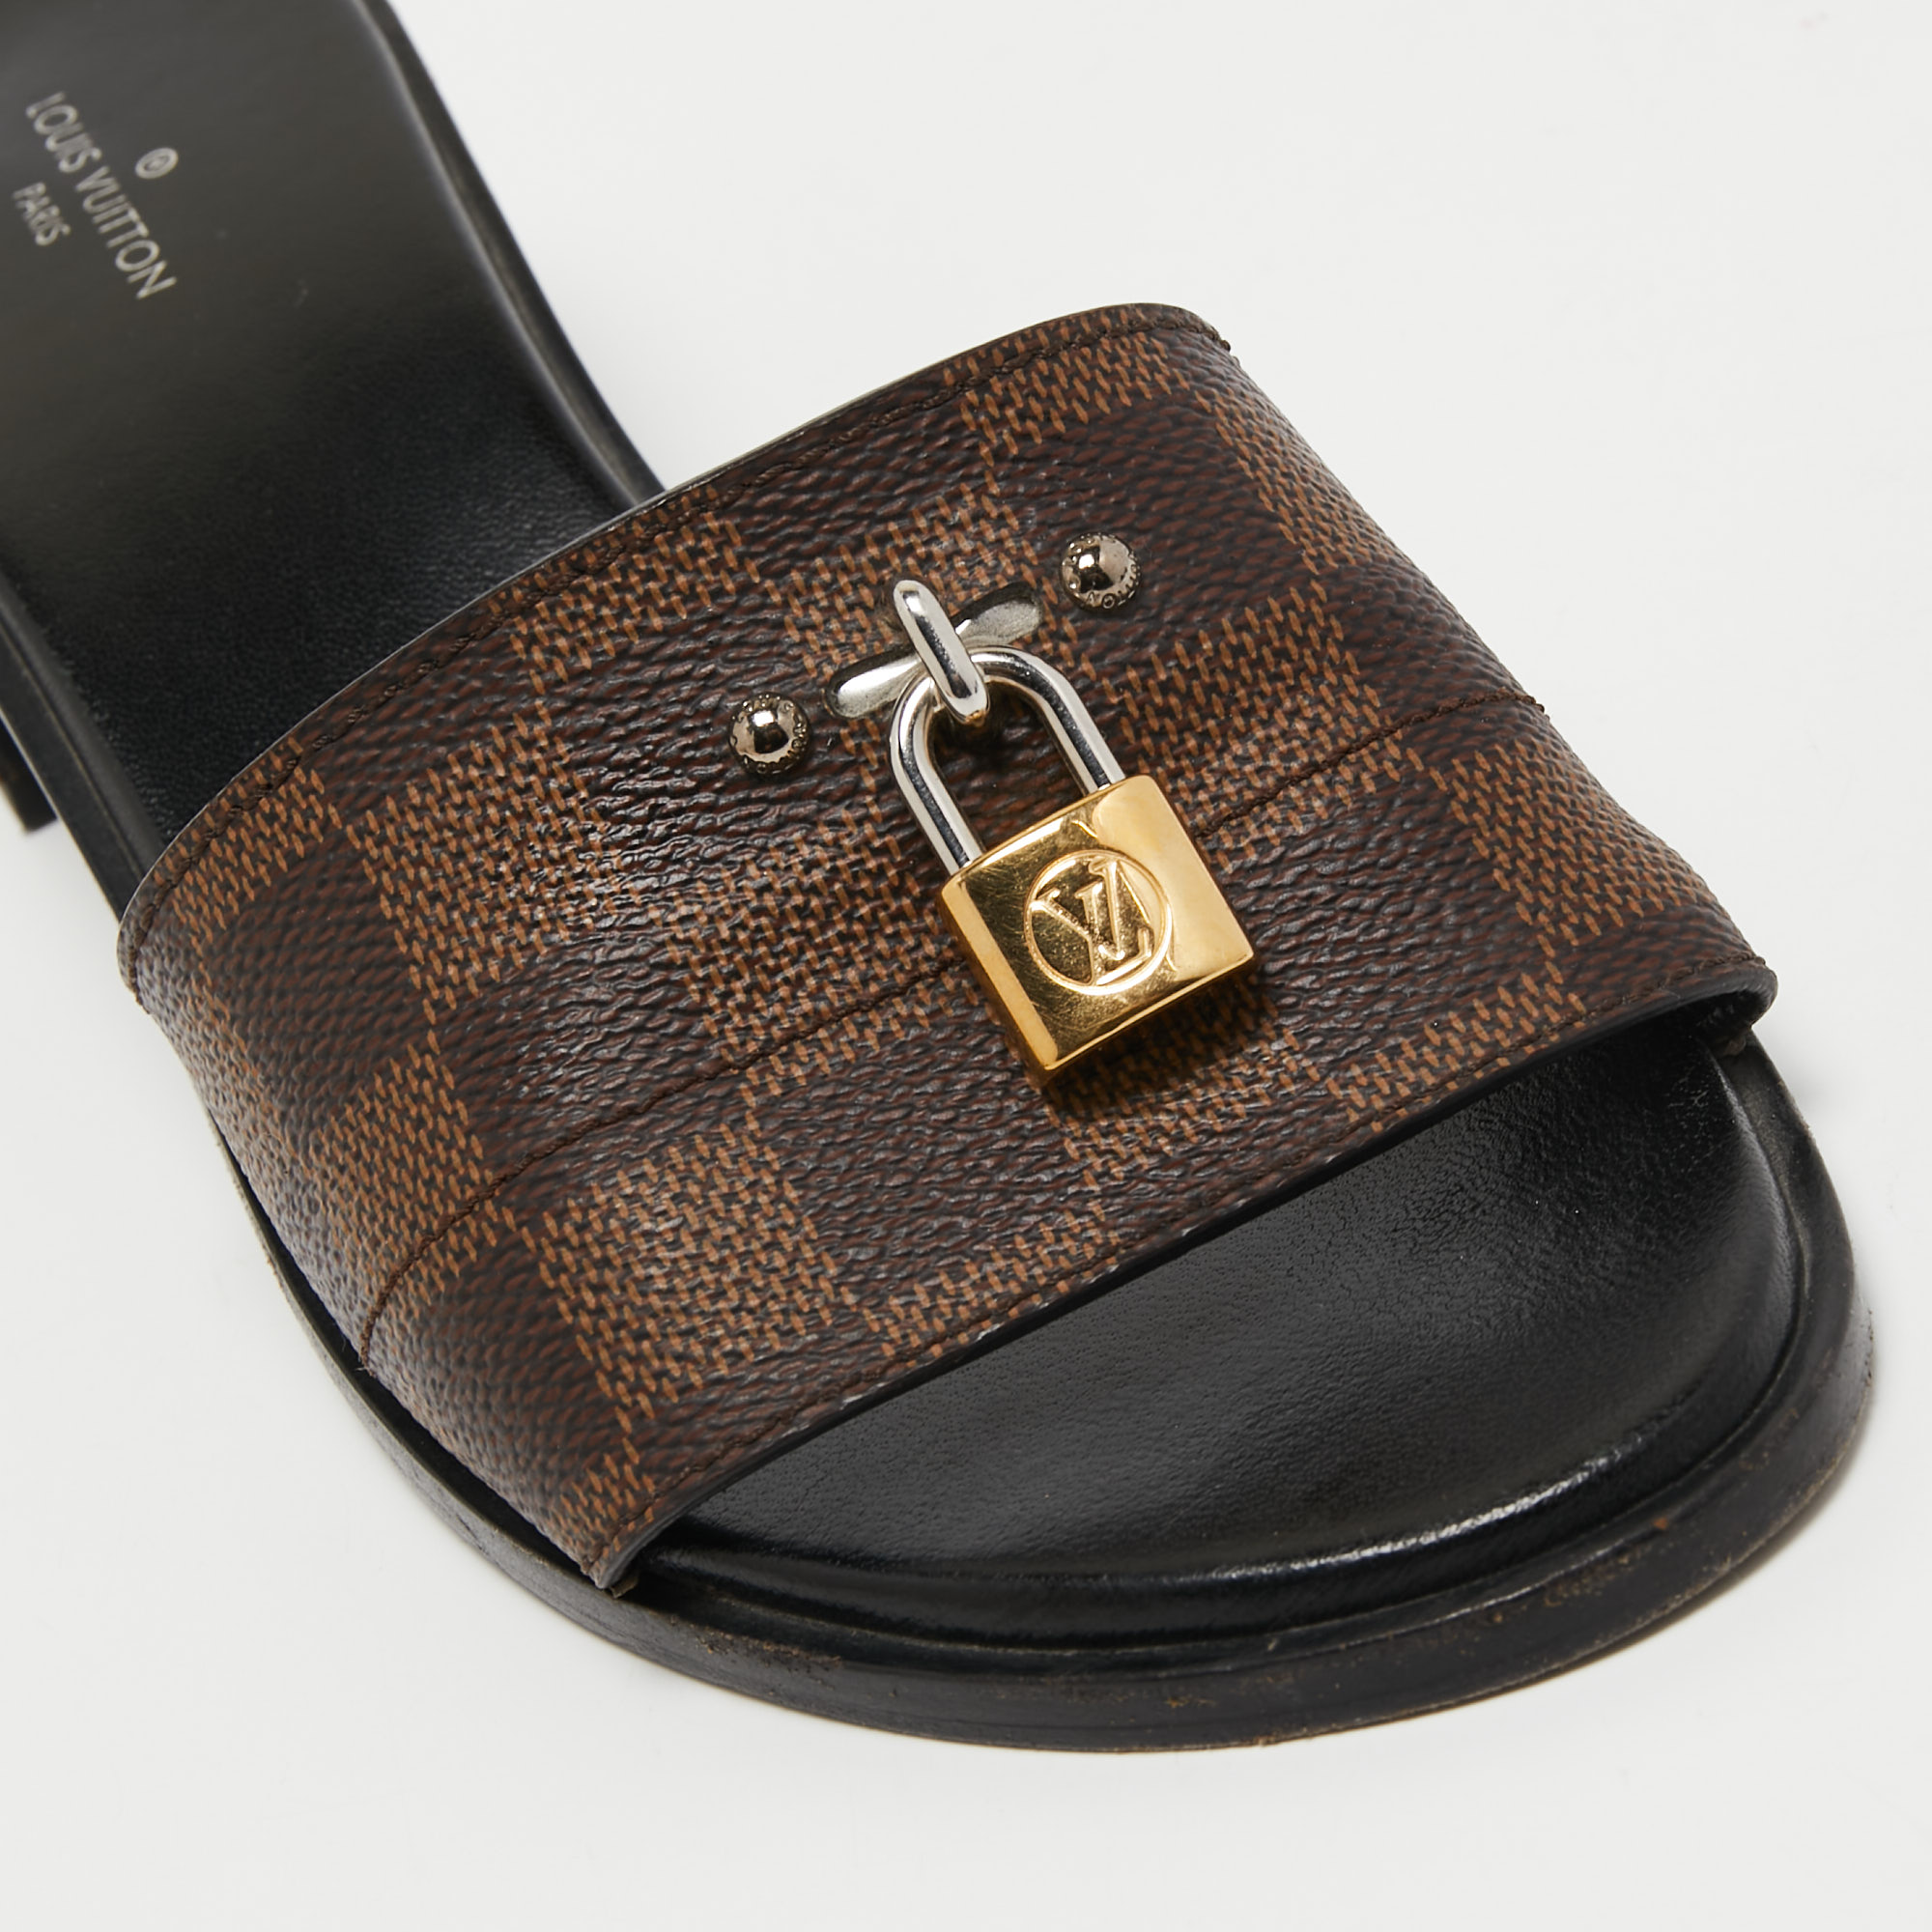 Cloth sandals Louis Vuitton Khaki size 38.5 EU in Cloth - 36559869